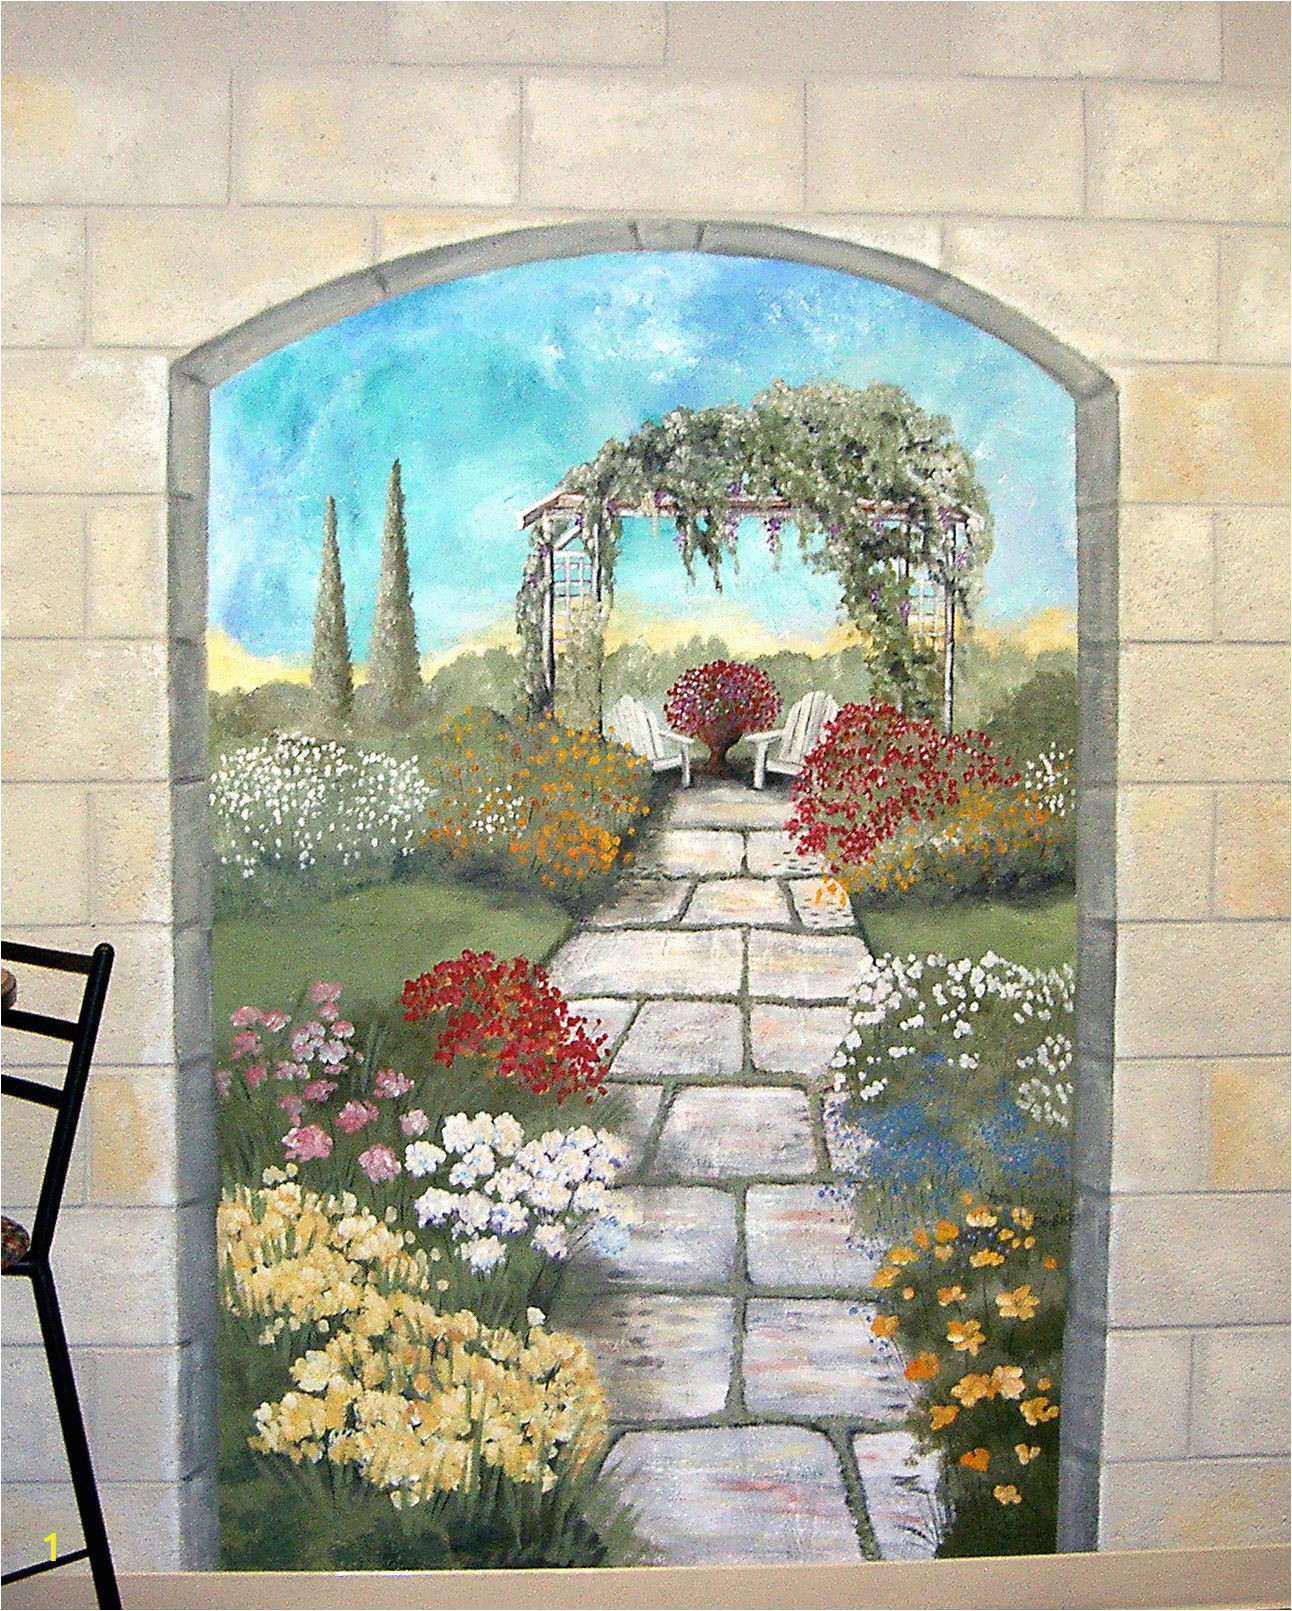 Painting Murals On Exterior Walls Garden Mural On A Cement Block Wall Murals